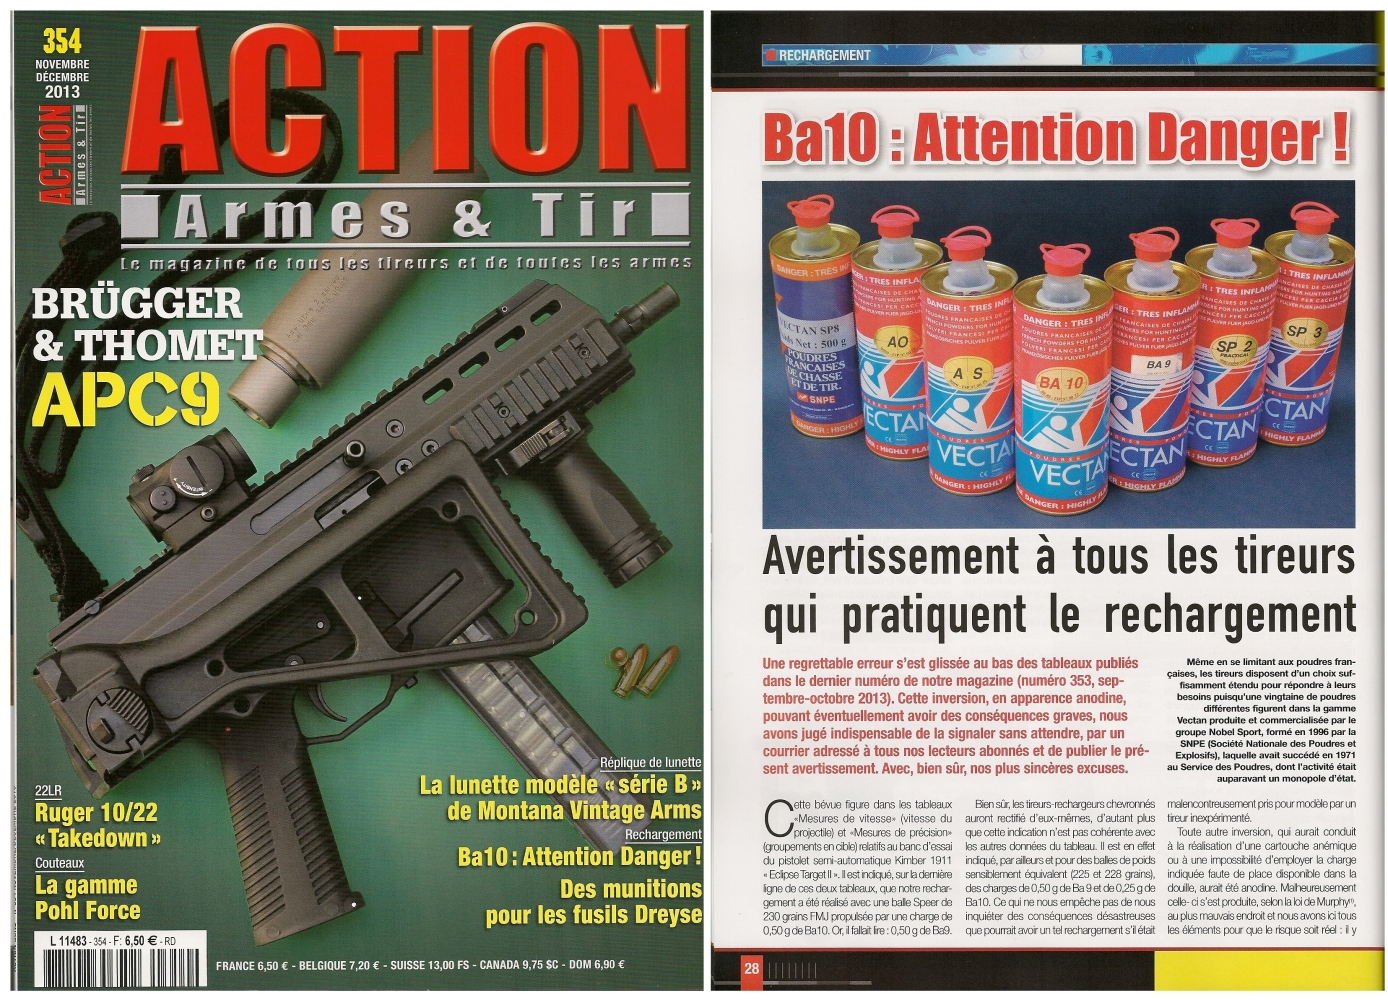 L’article « Ba10 : Attention Danger ! » a été publié sur 3 pages dans le magazine Action Armes & Tir n°354 (novembre-décembre 2013)